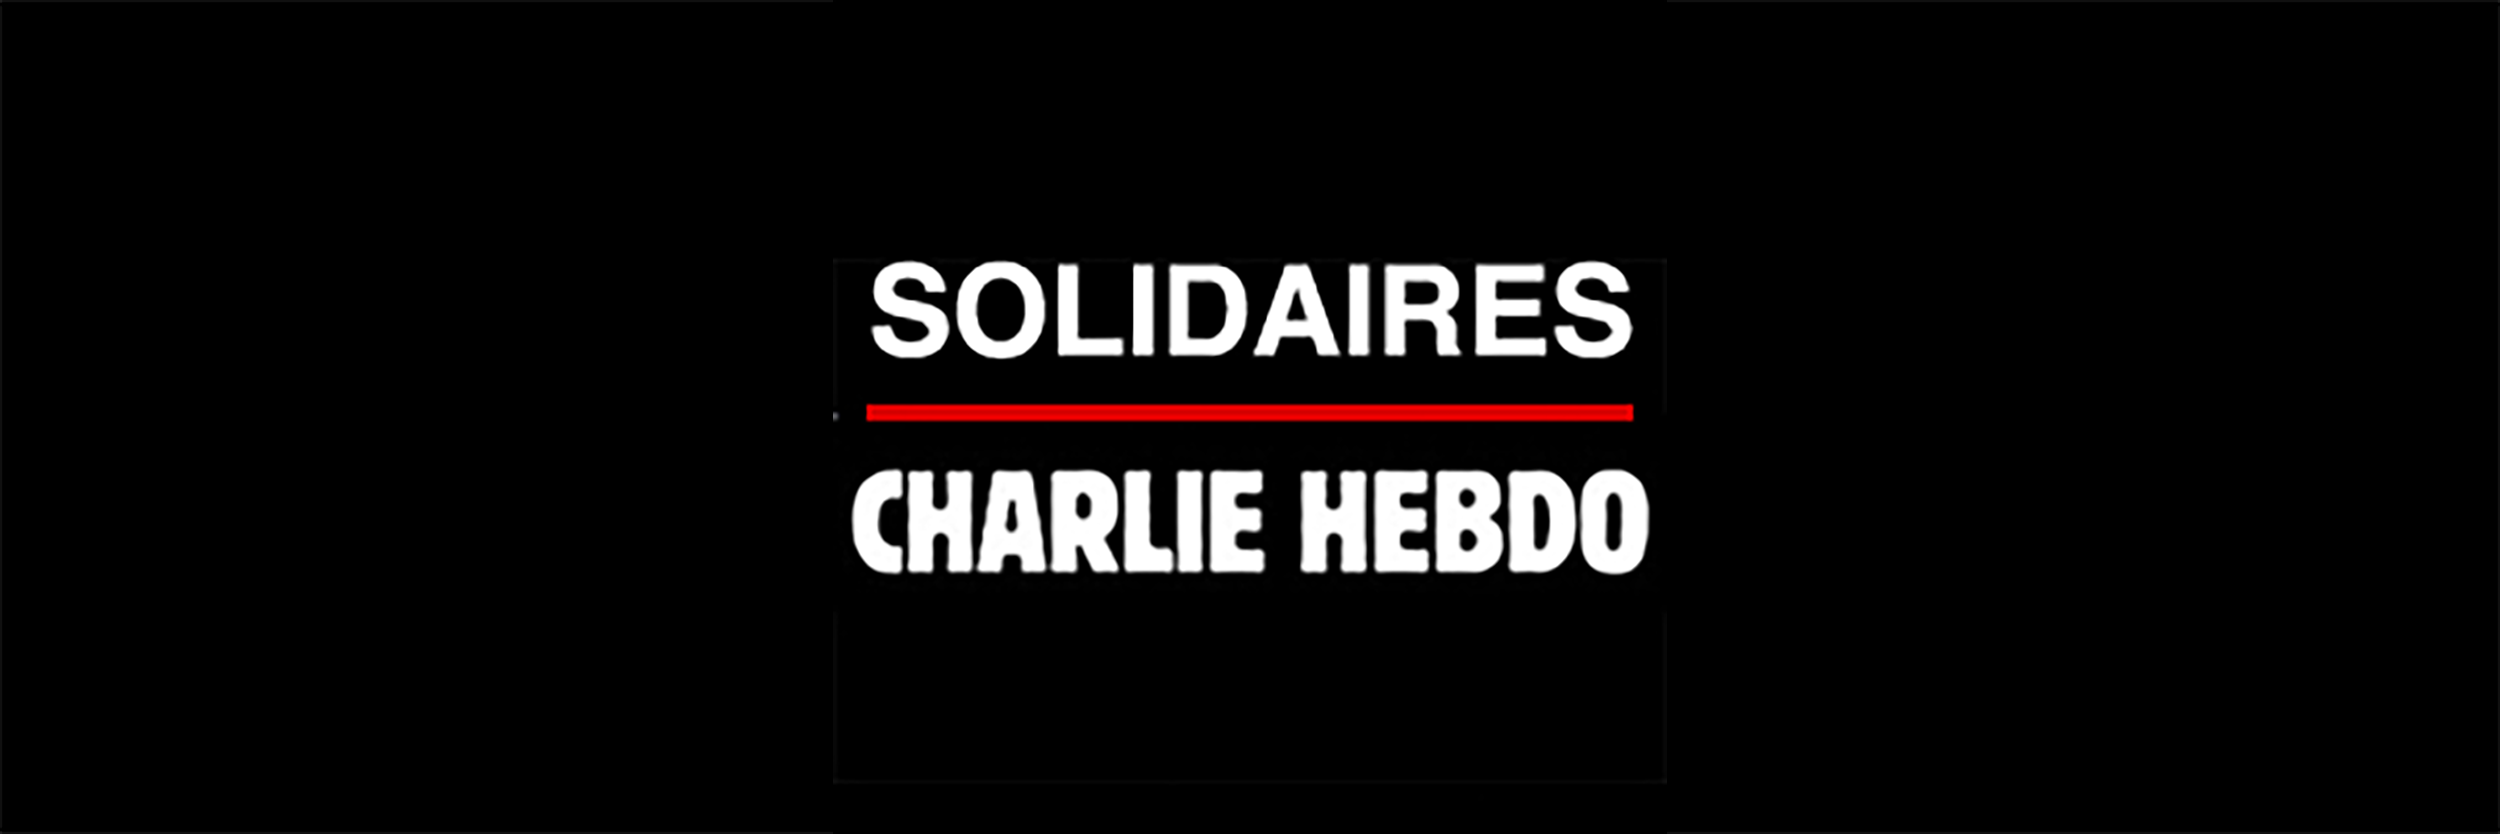 Solidaires-Charlie-Hebdo